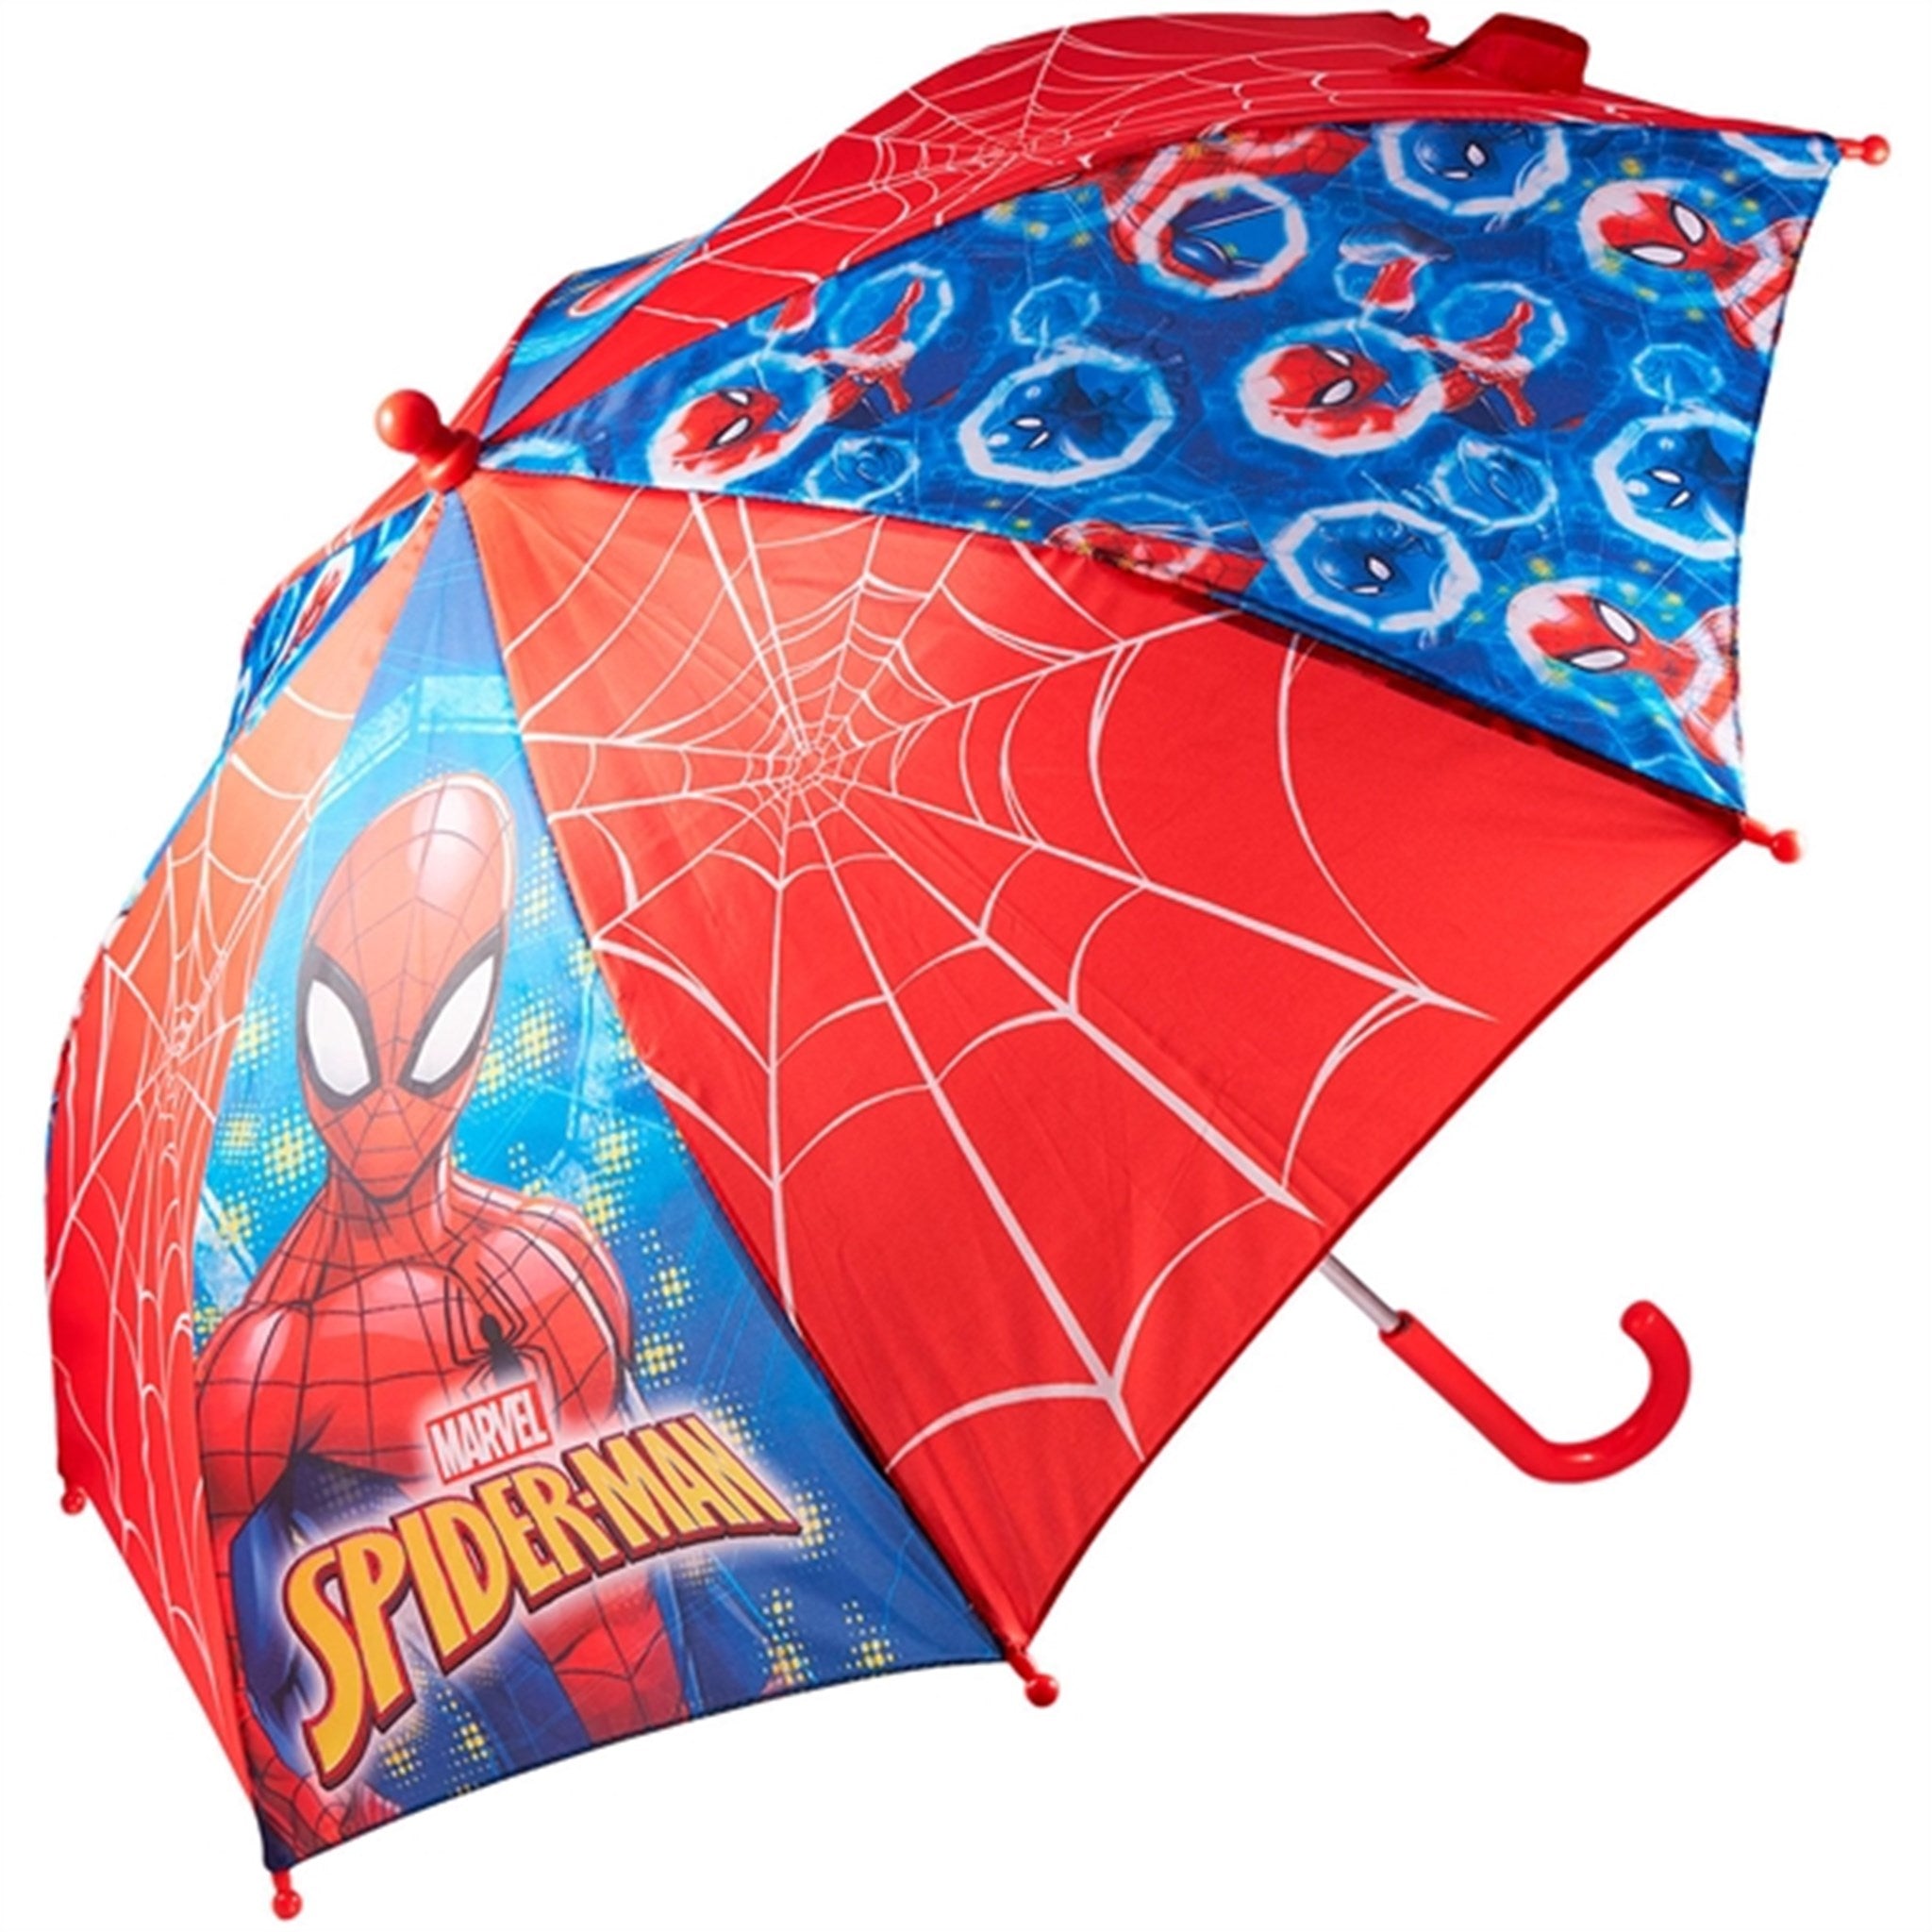 Euromic Spiderman Umbrella